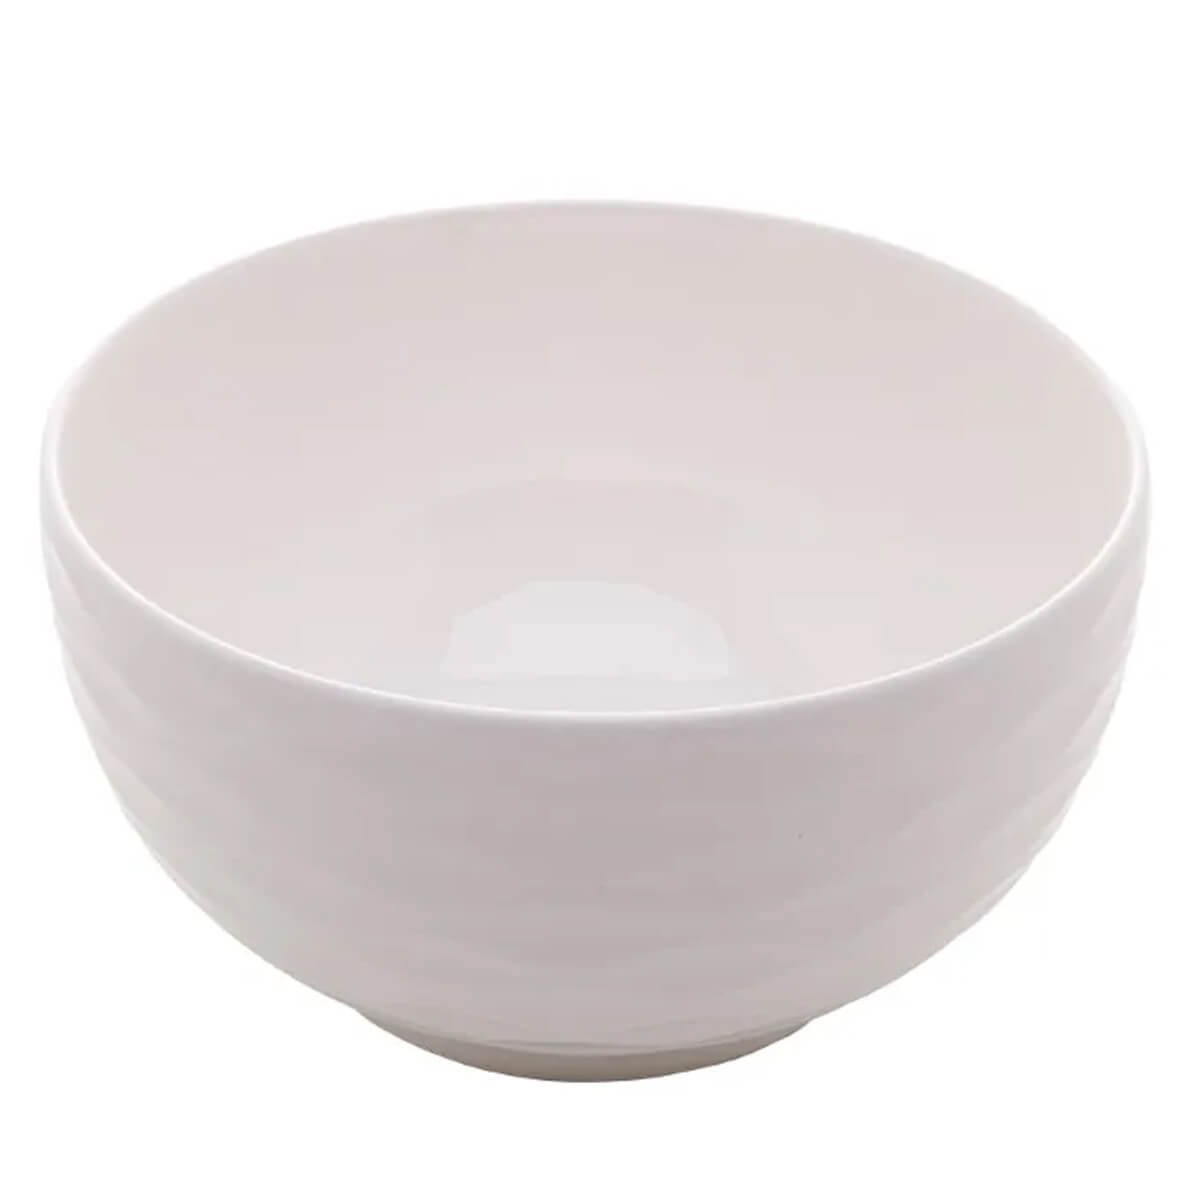 6 Tigelas de Porcelana Brancas Lyor 400ml Bowls Açaí Sobremesa Caldos Sopas - 8